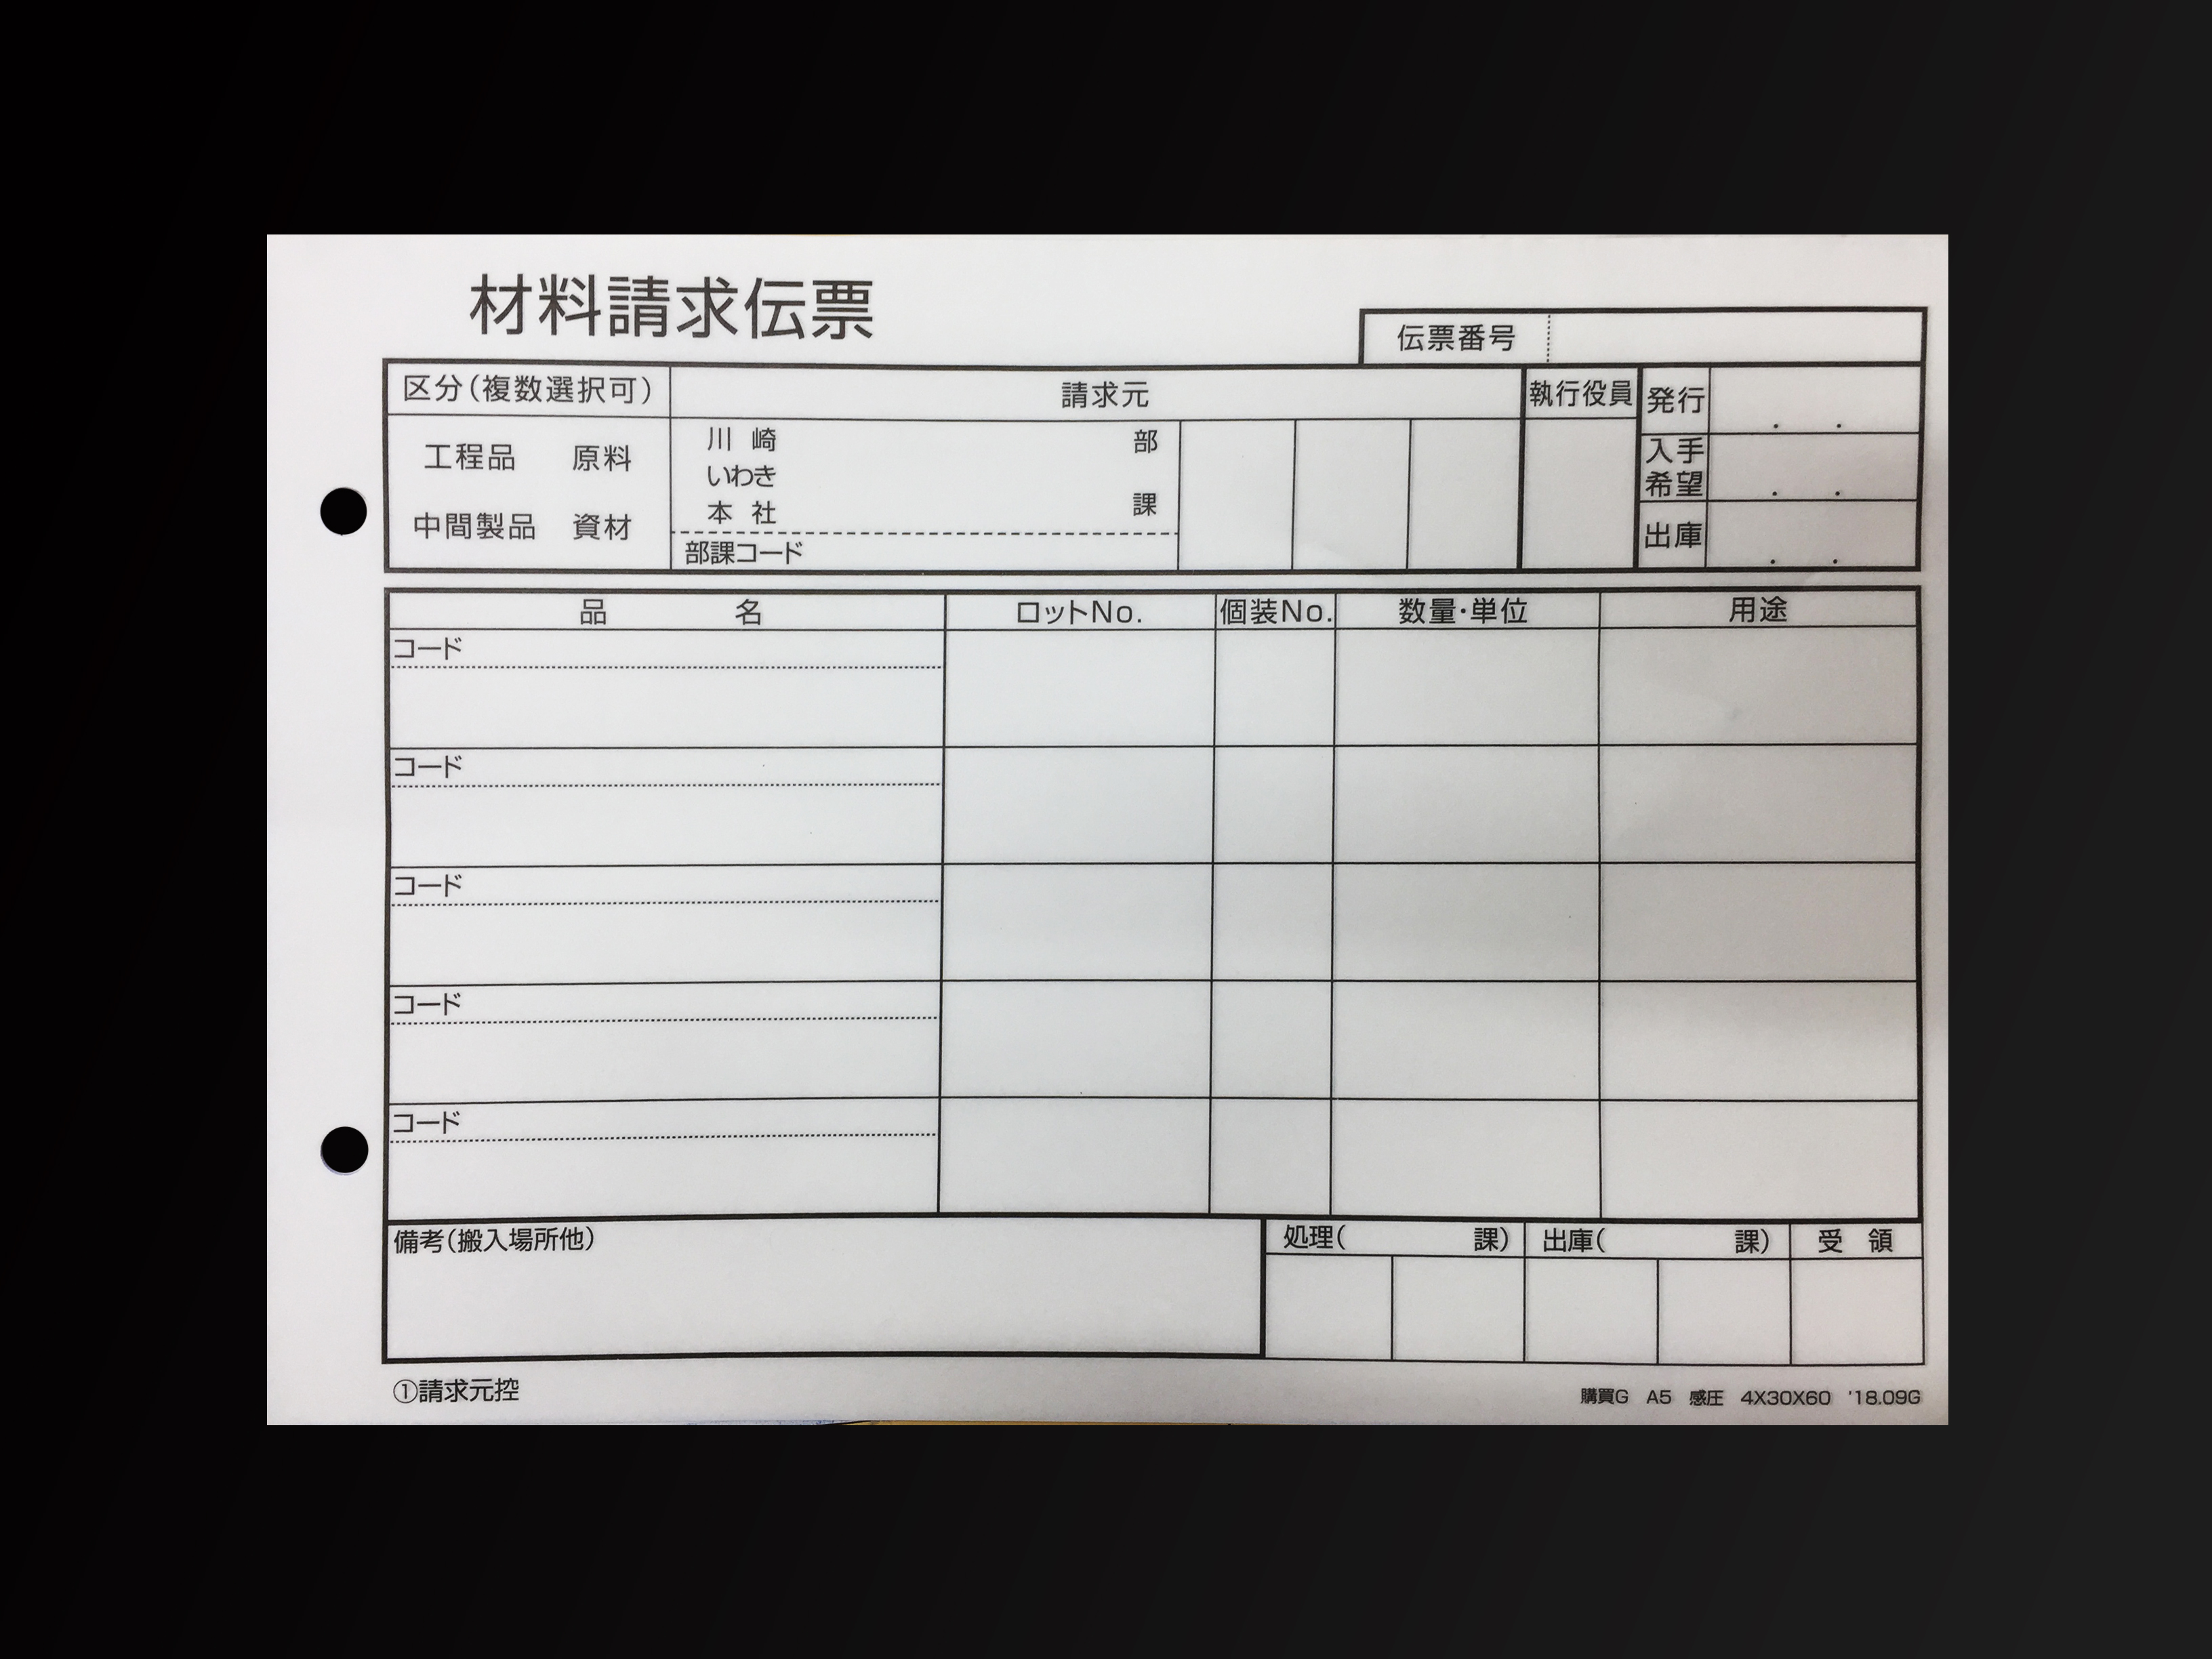 施工業で使用する材料請求伝票(4枚複写)の伝票作成実績